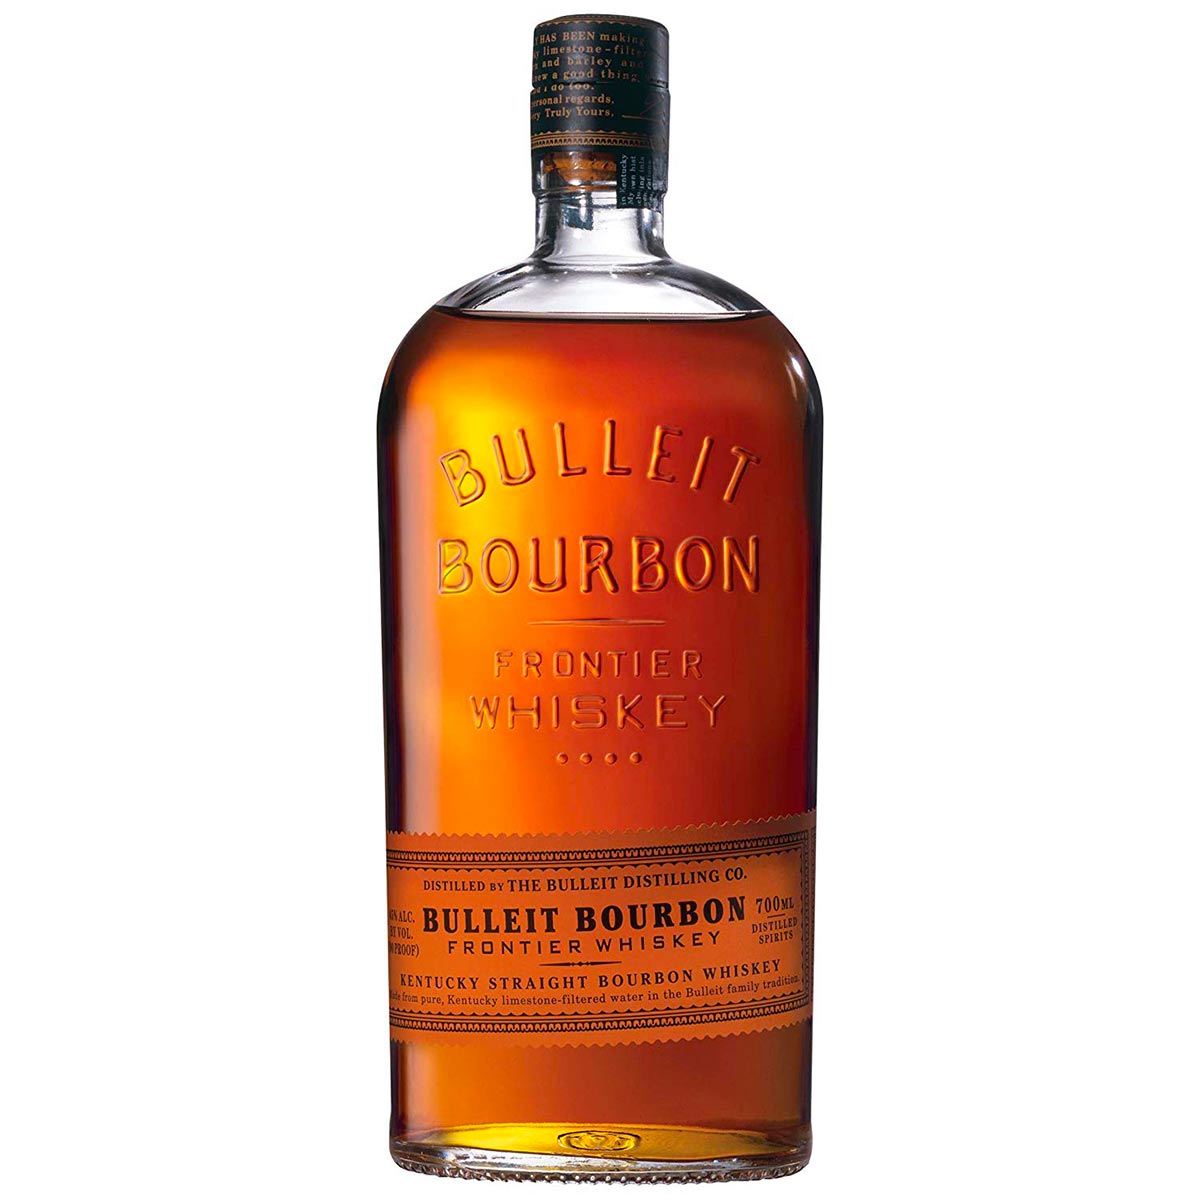 Kentucky Bourbon Bulleit